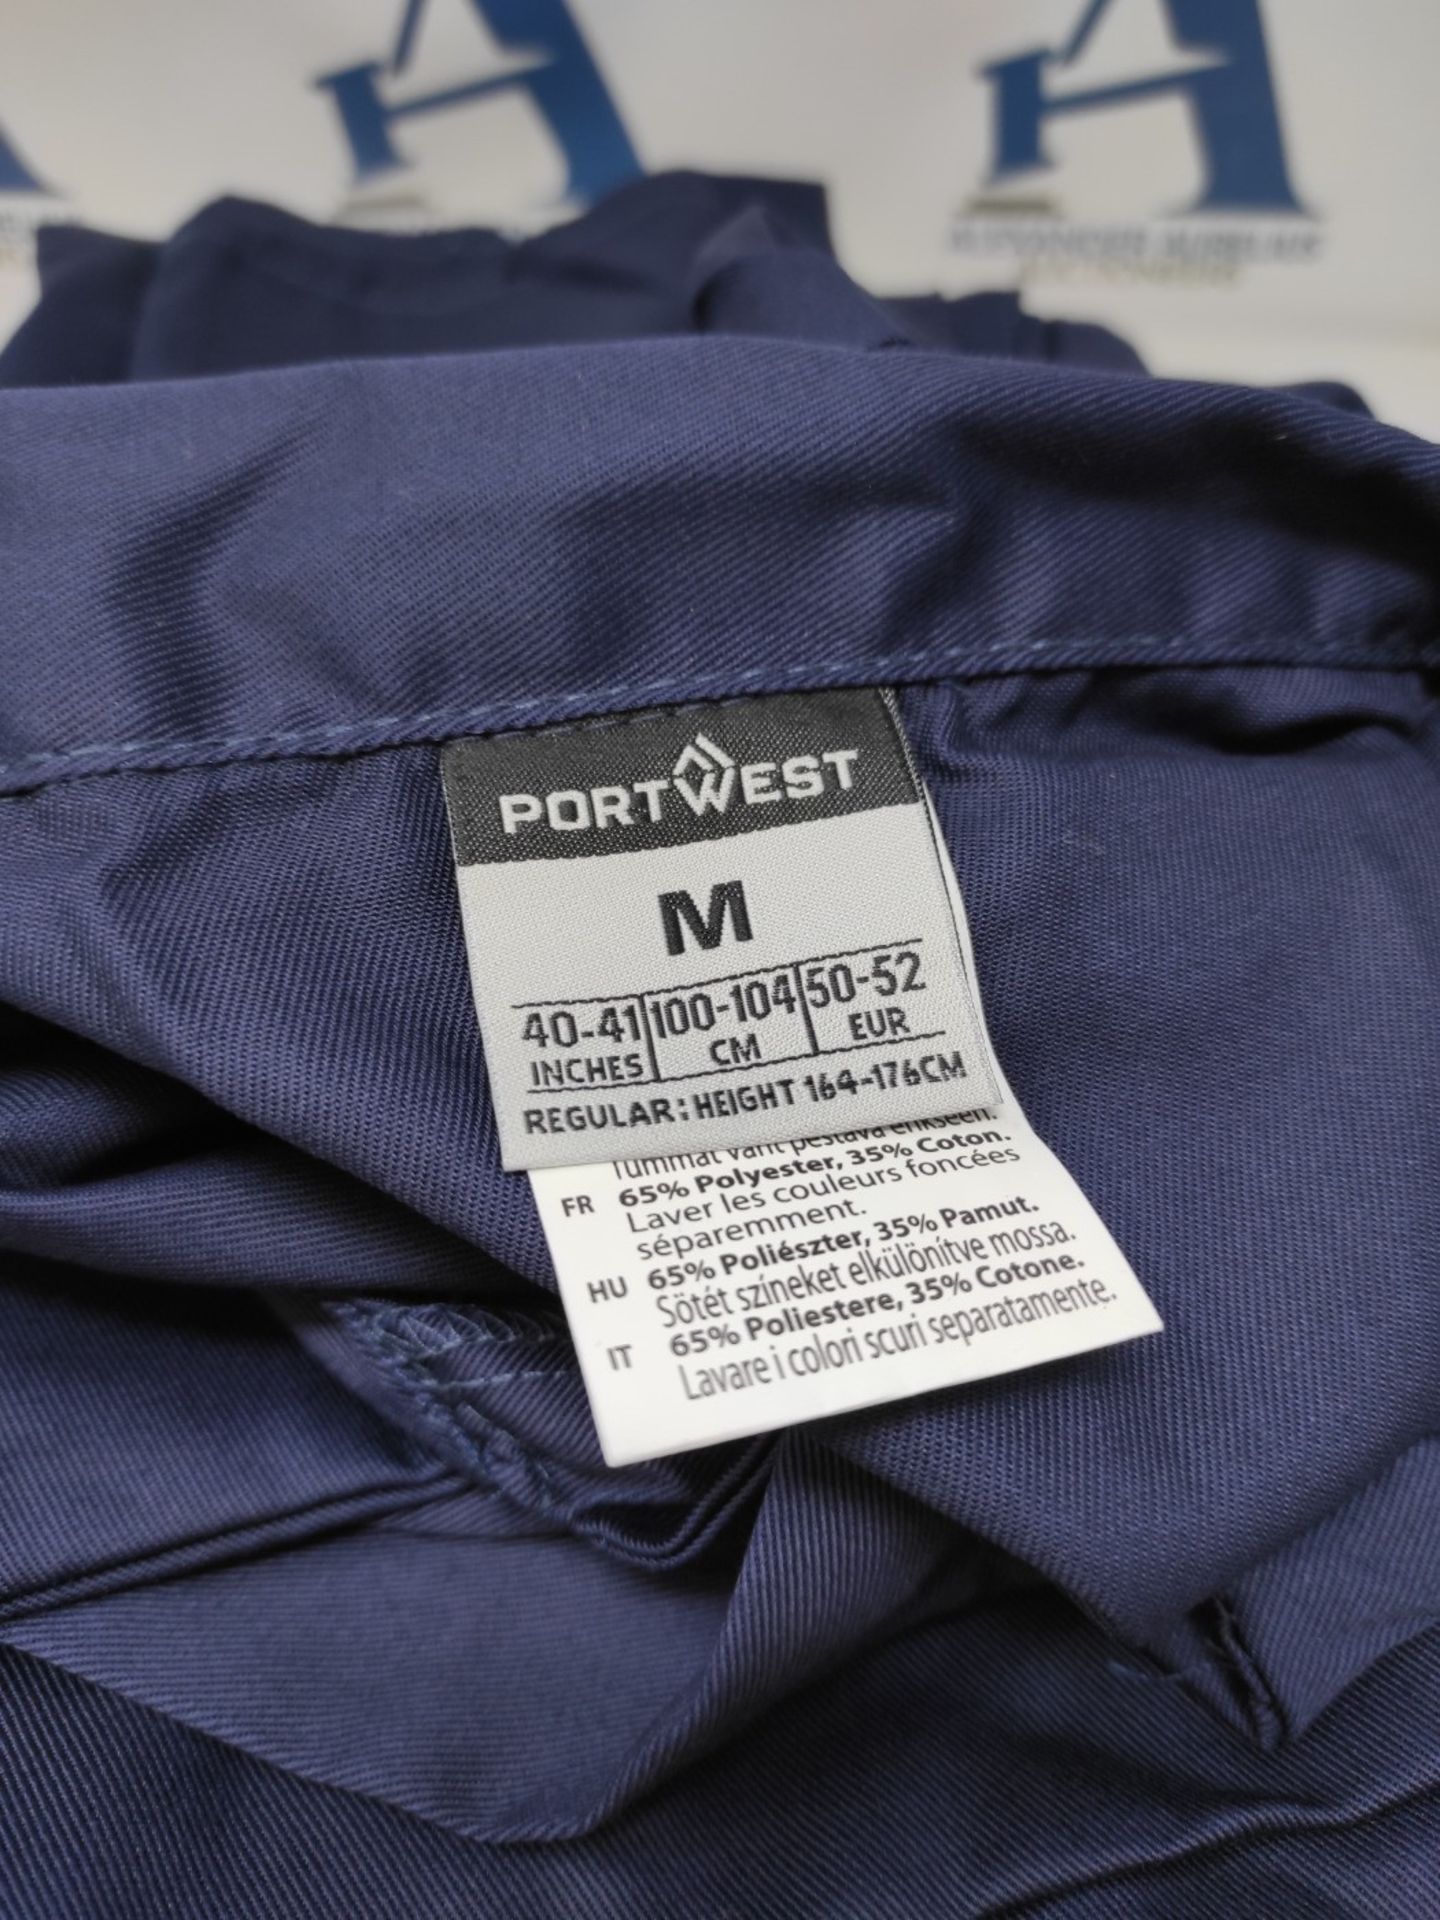 Portwest S999 Men's Euro Workwear Polycotton Coverall Boiler Suit Overalls Navy, M - Bild 3 aus 3